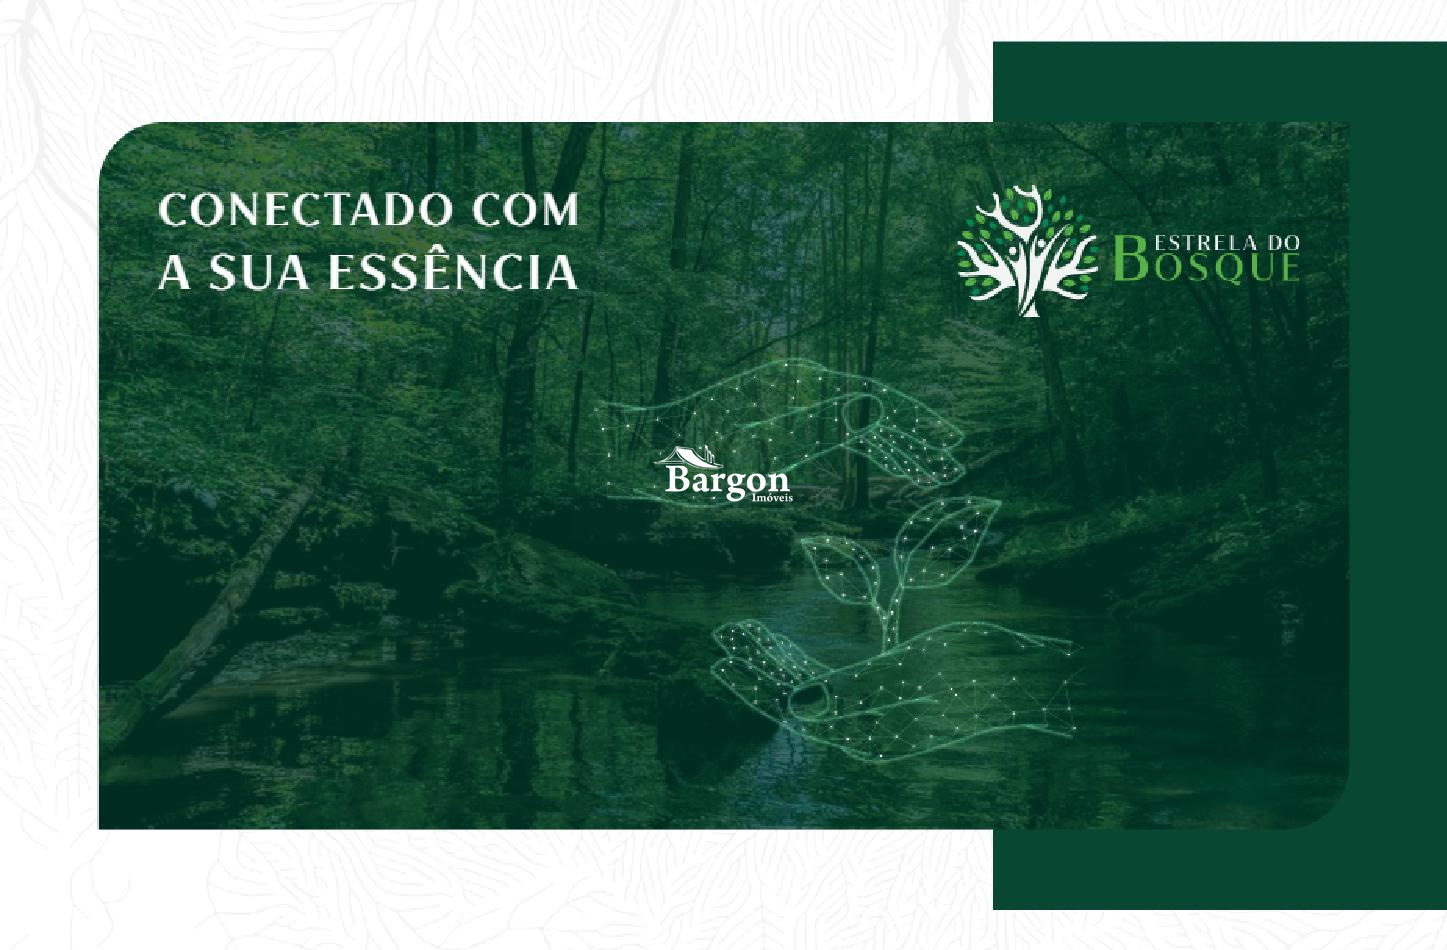 Terreno Residencial à venda em Bosque do Imperador, Juiz de Fora - MG - Foto 23